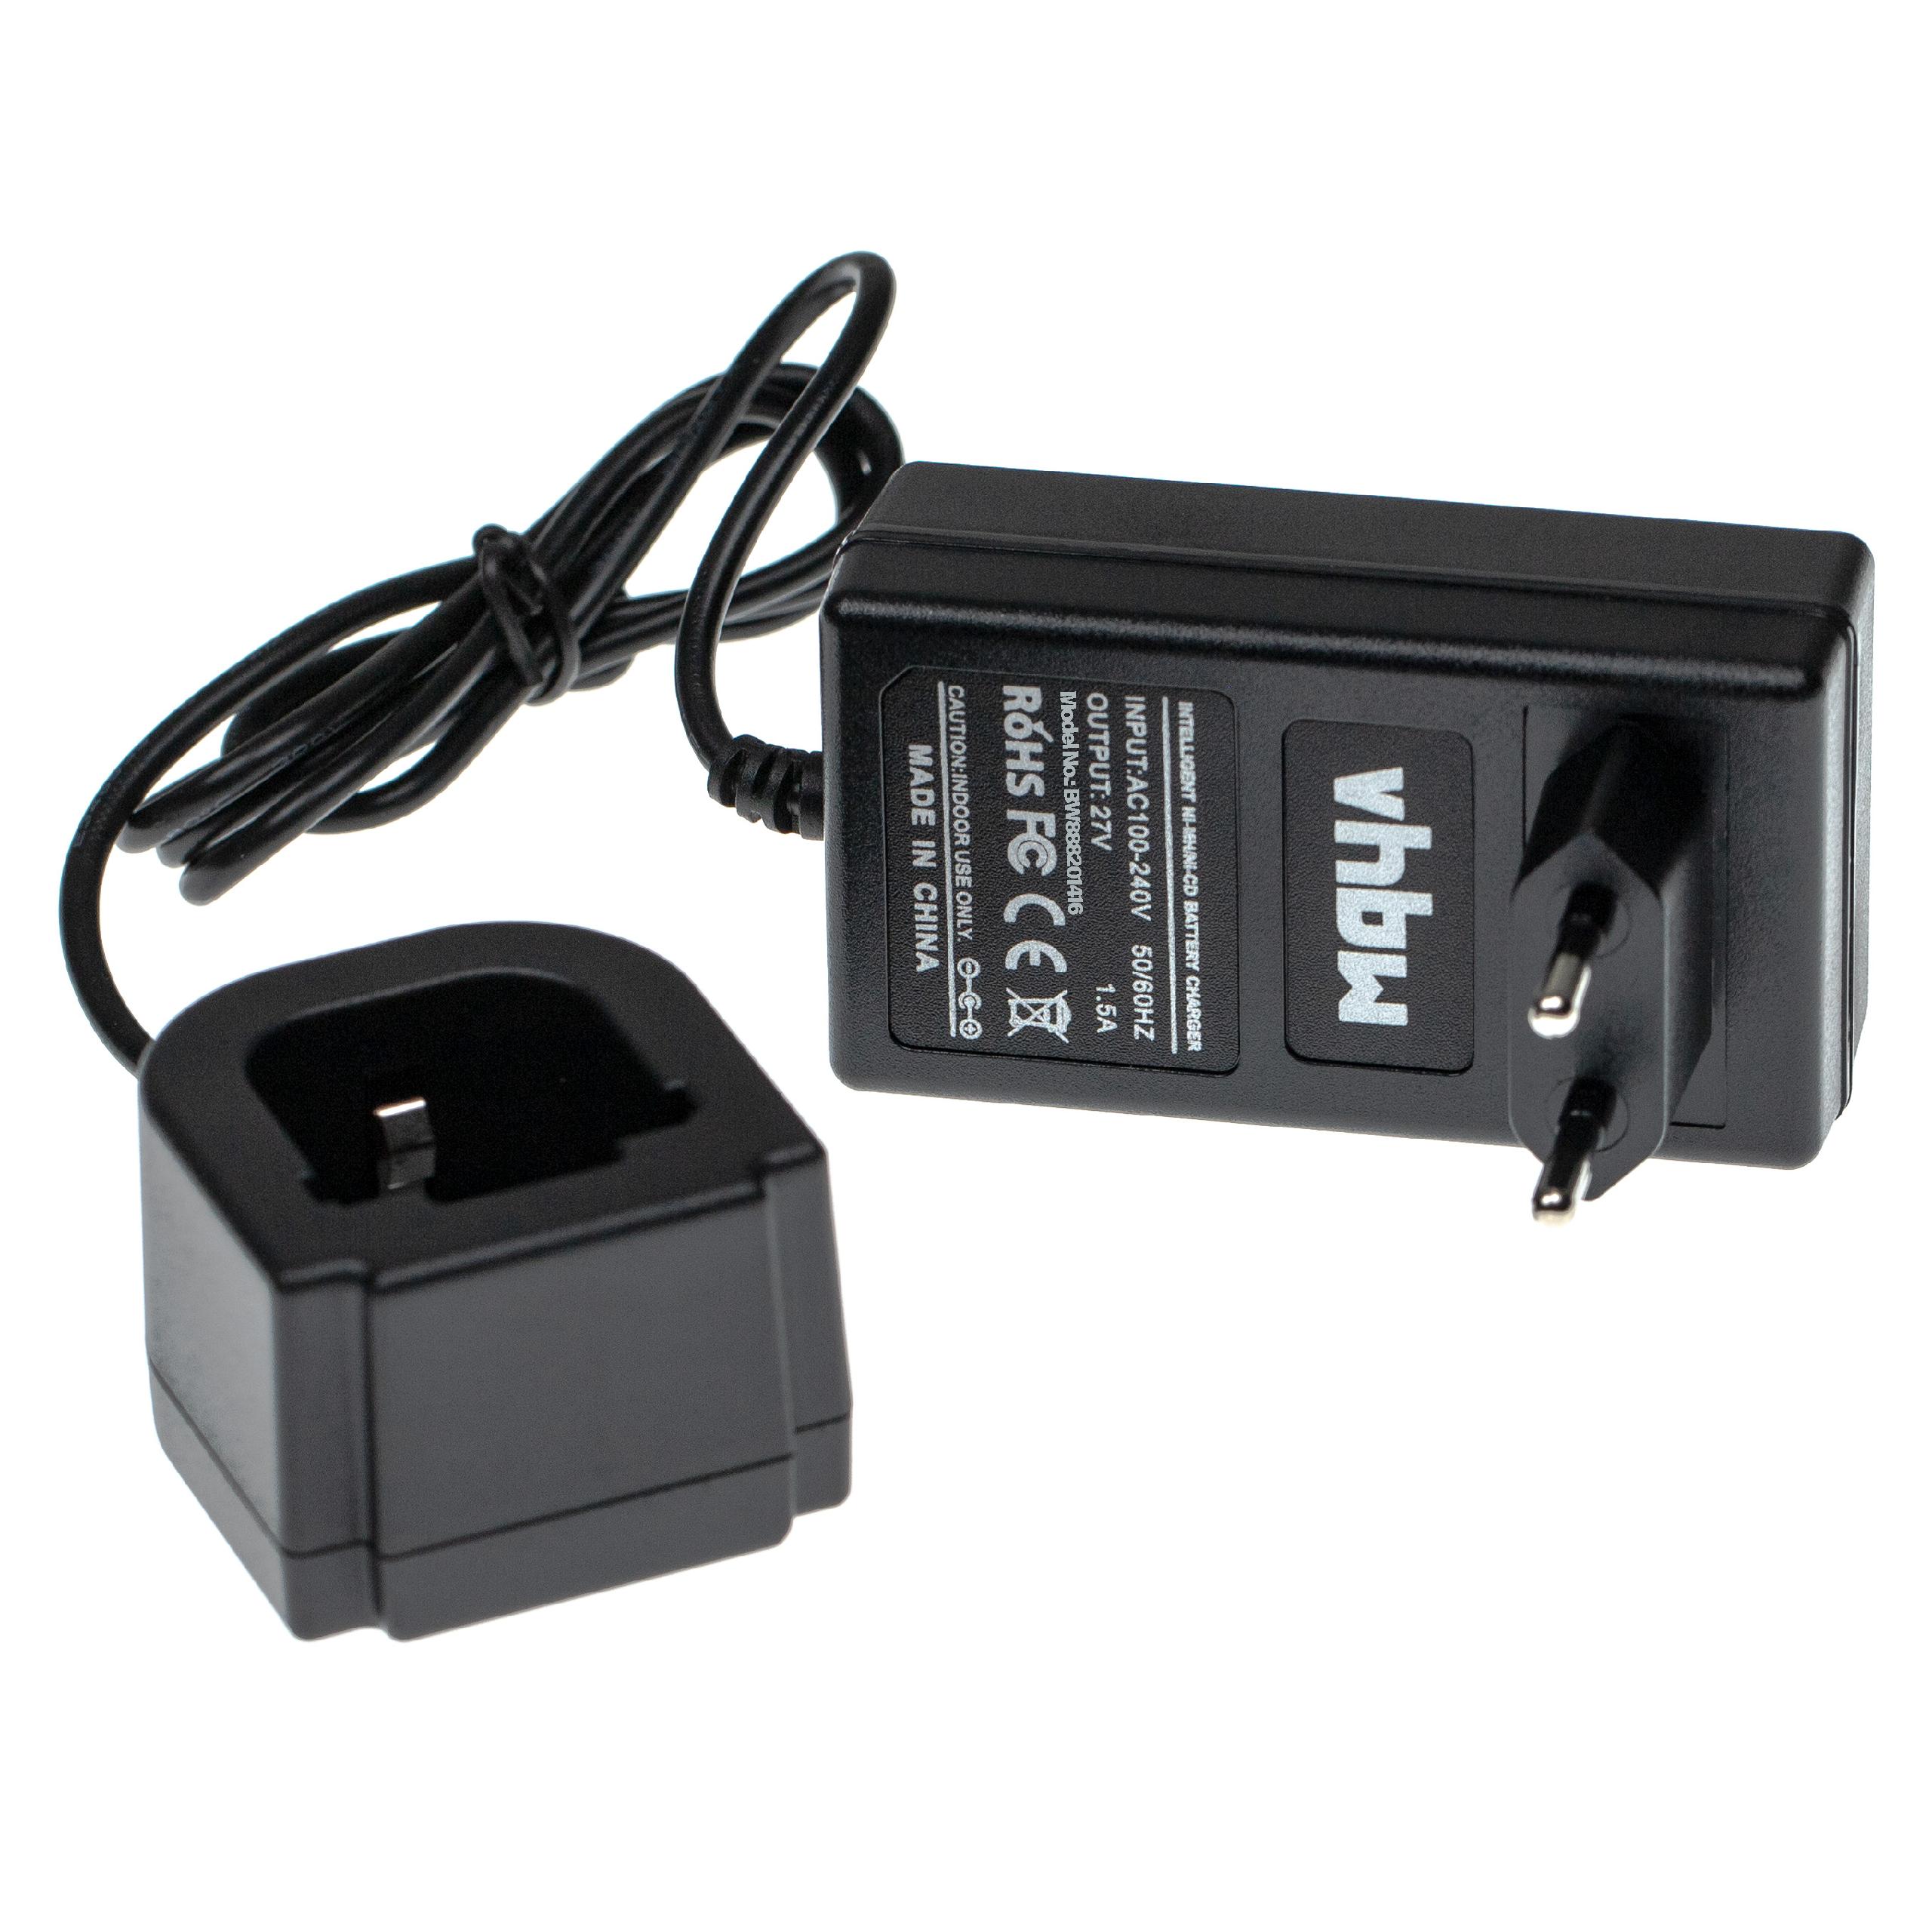 Chargeur pour batterie d'outil électrique , Hilti 265605